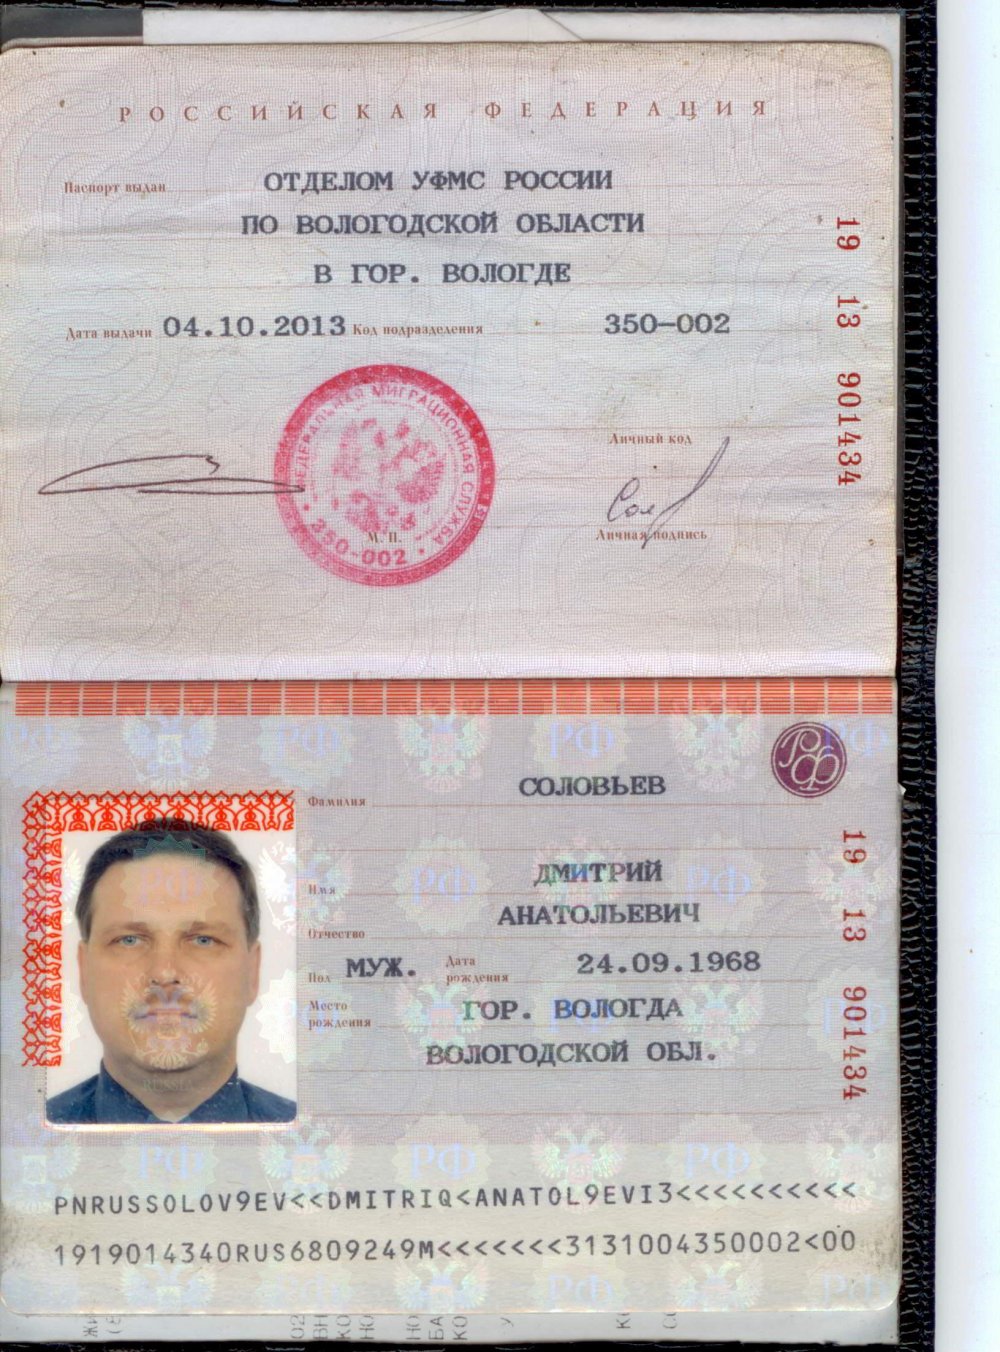 Дата рождения в паспорте